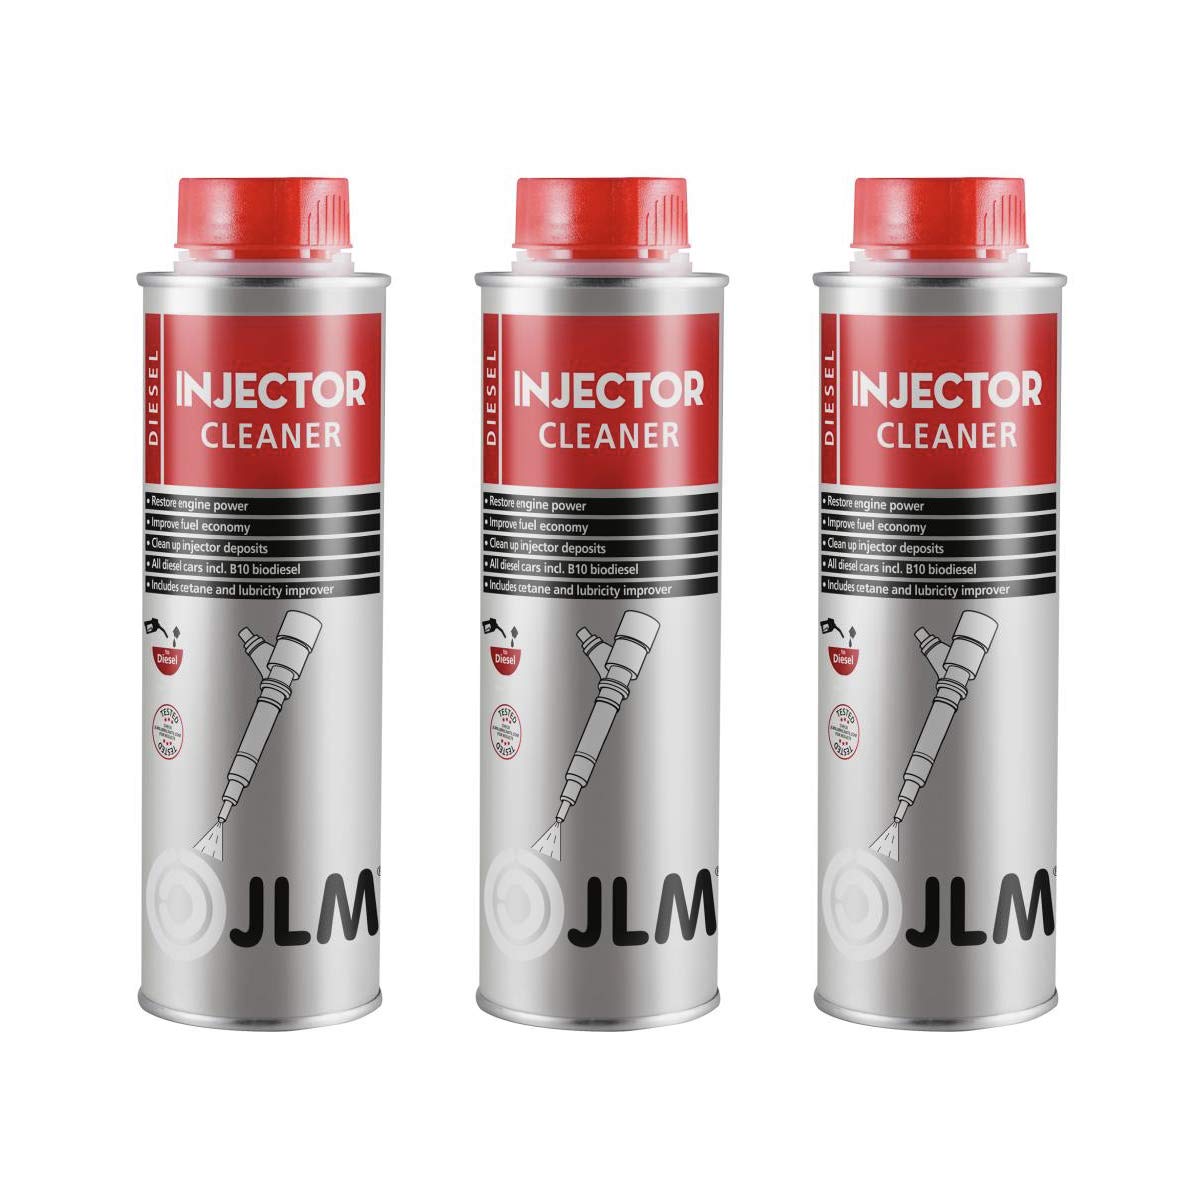 JLM Diesel Injektor Reiniger 3 x 250ml (750ml) | 3er Pack | JLM Diesel Injector Cleaner | Diesel Kraftstoffsystemreiniger von JLM